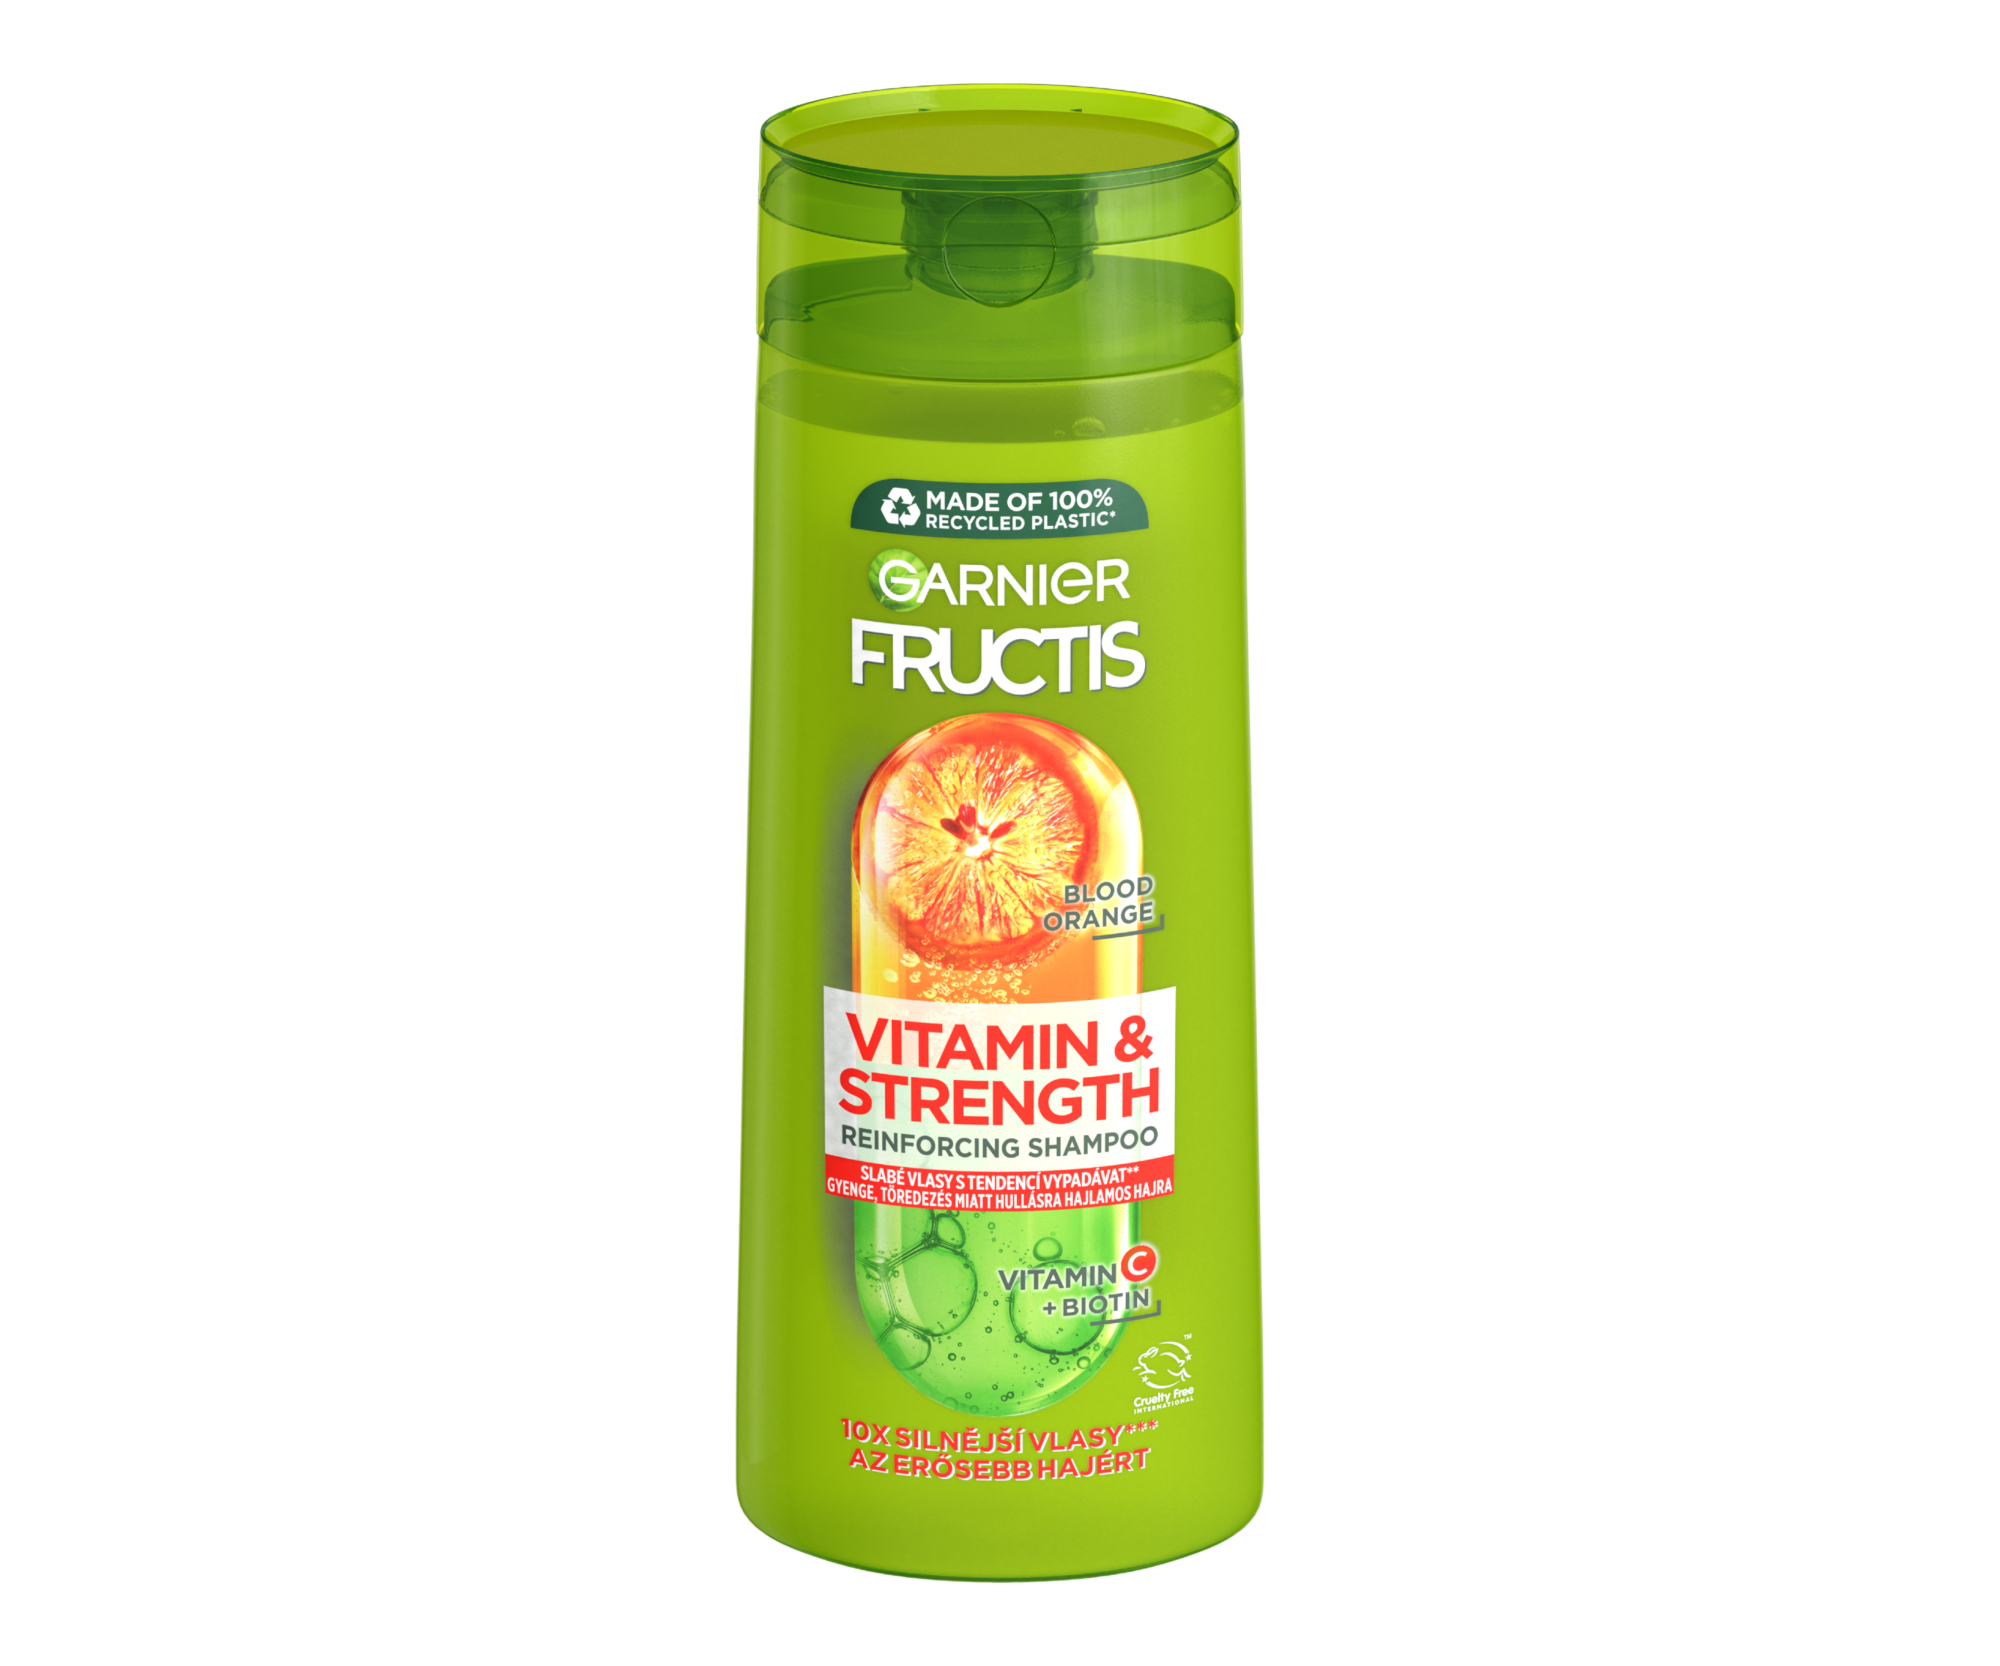 Šampon pro posílení slabých vlasů Garnier Fructis Vitamin a Strength - 400 ml + dárek zdarma